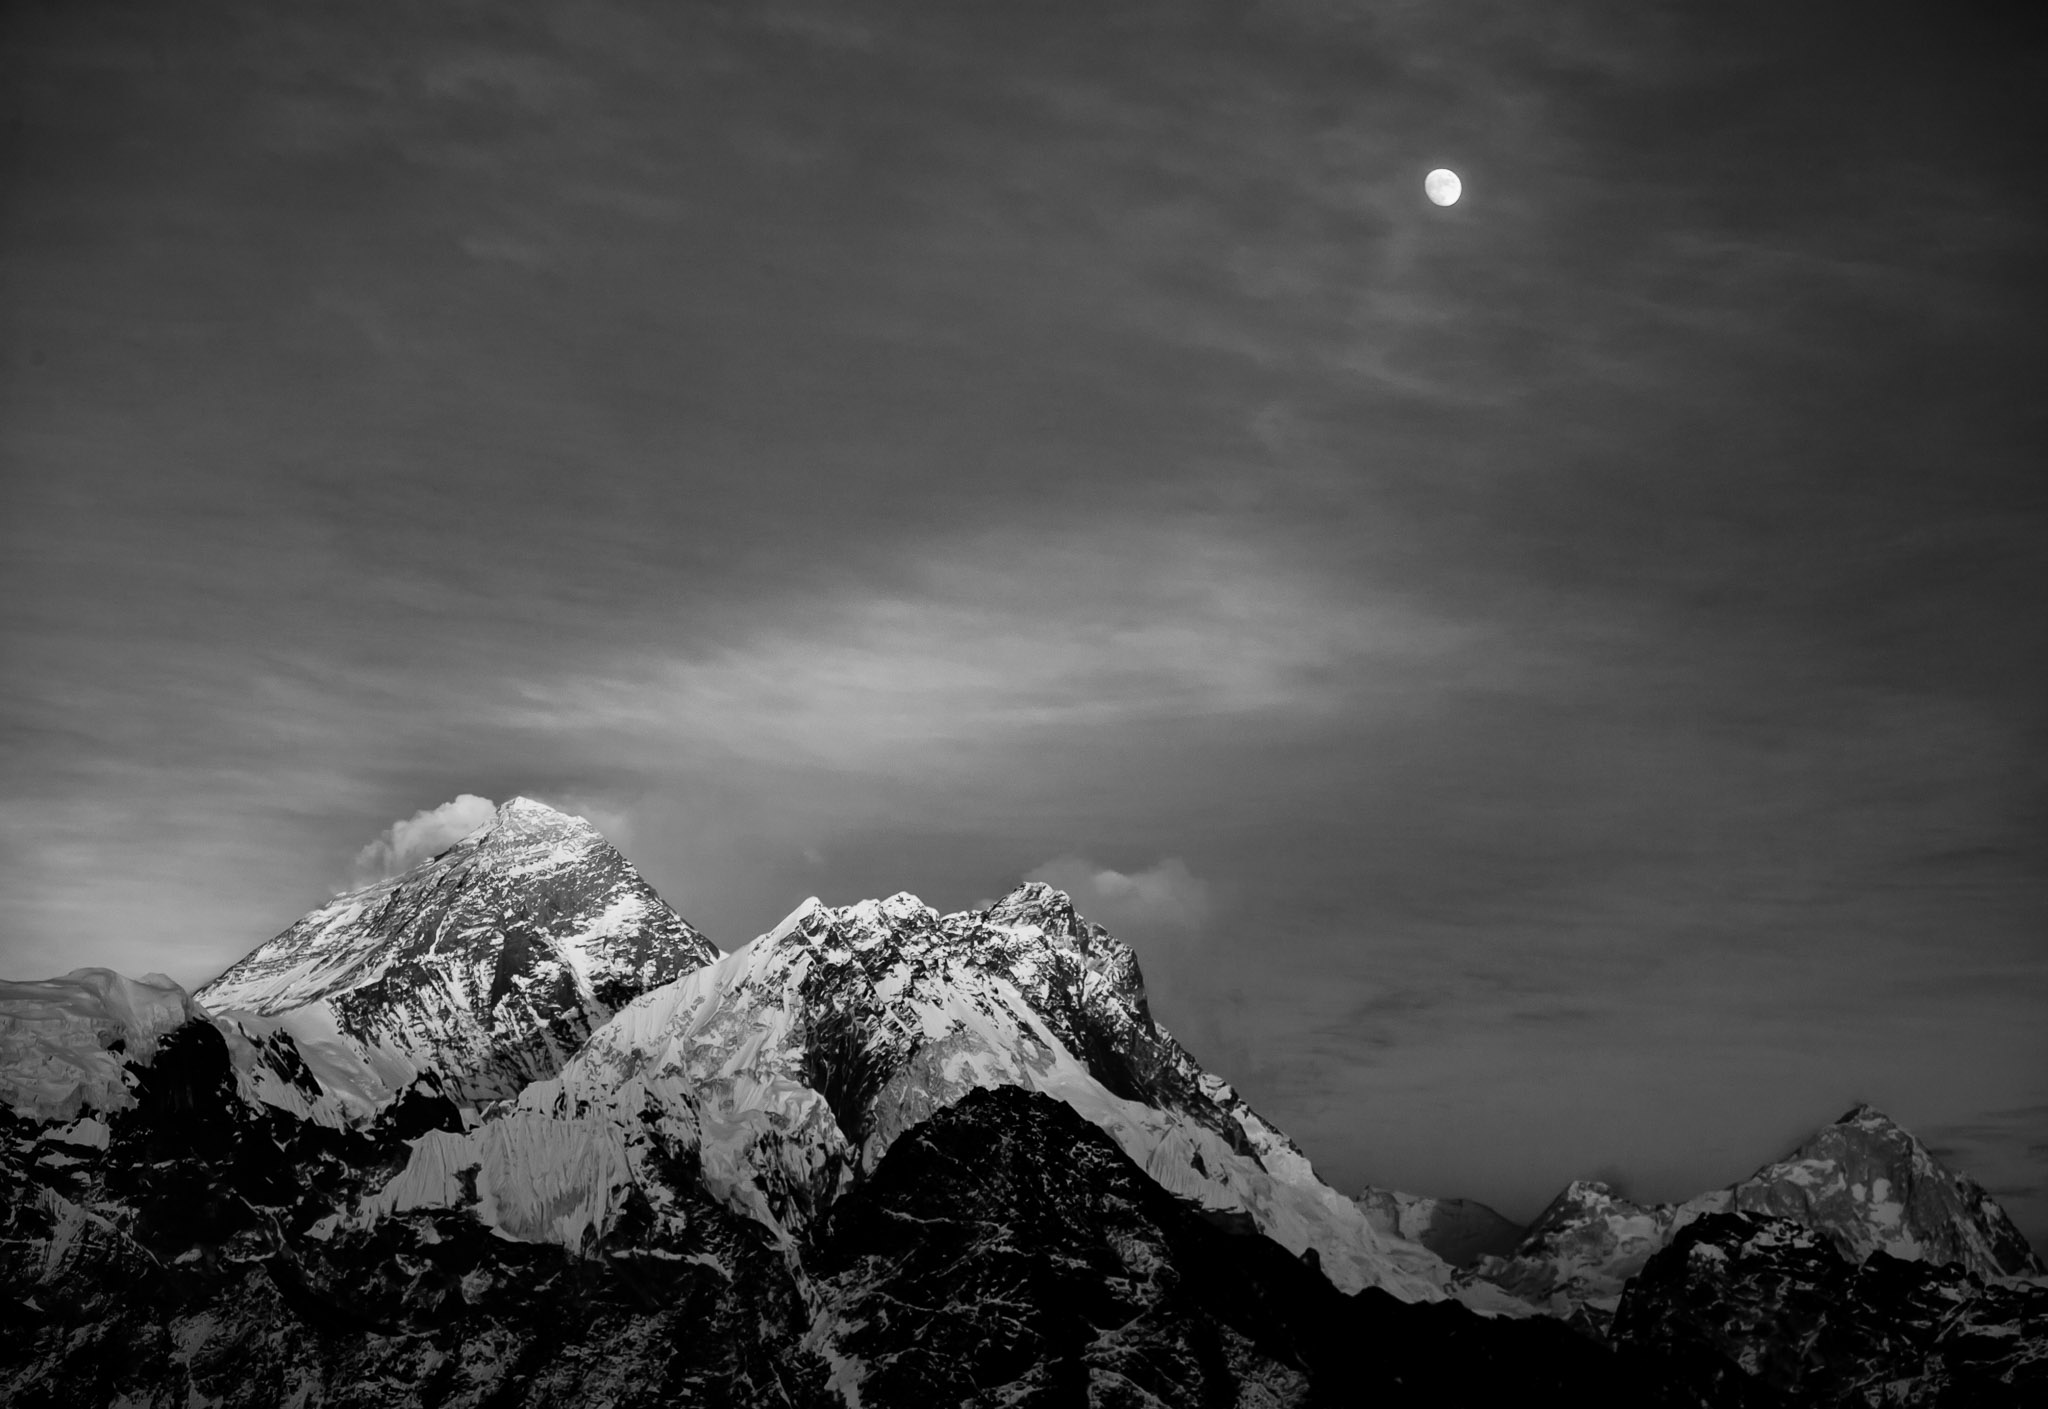 Moonrise over Everest & Lhotse from Gokyo Ri